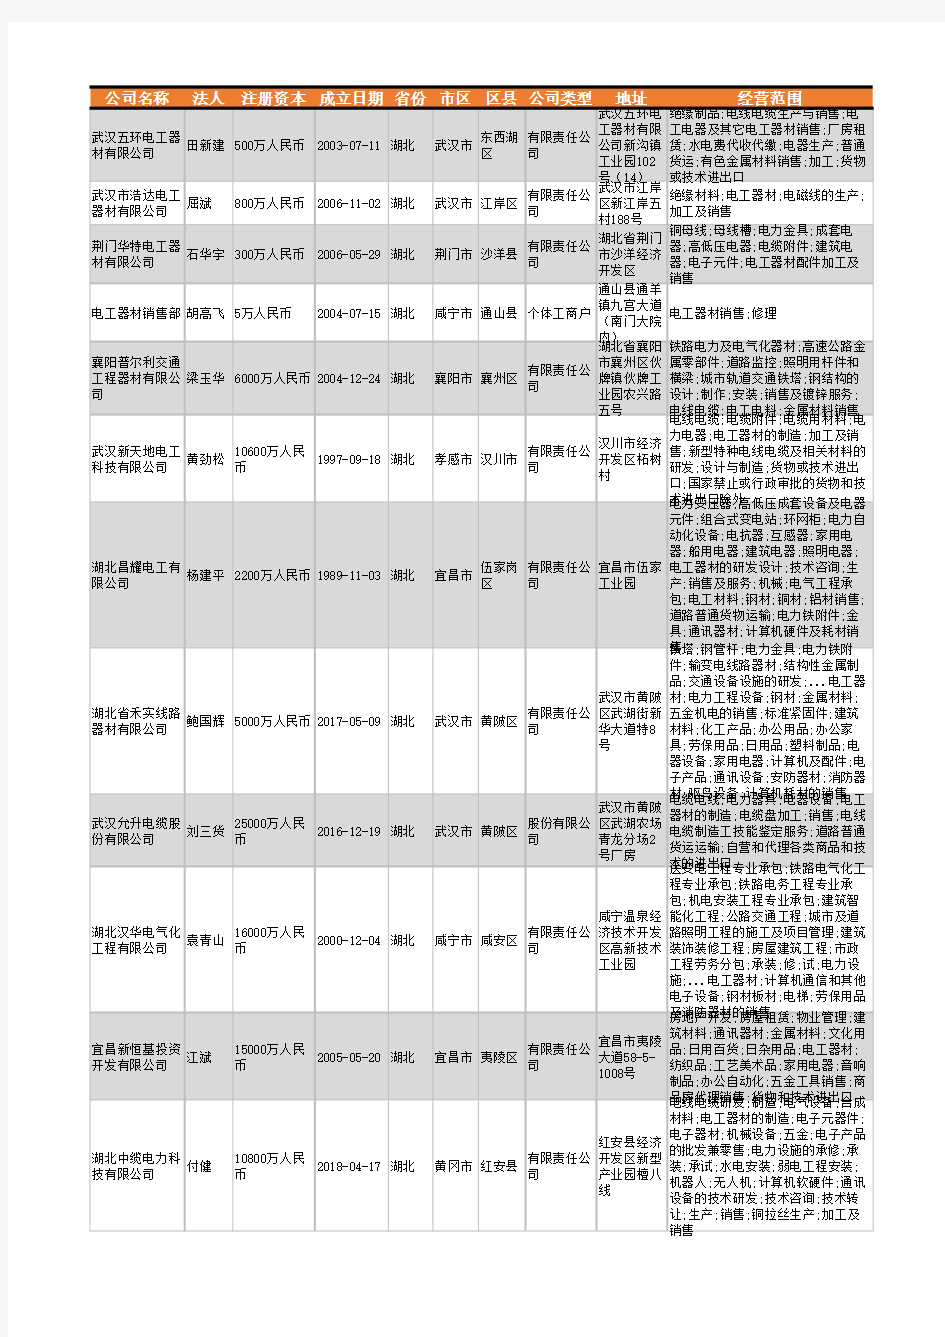 2021年湖北省电工器材行业企业名录1357家